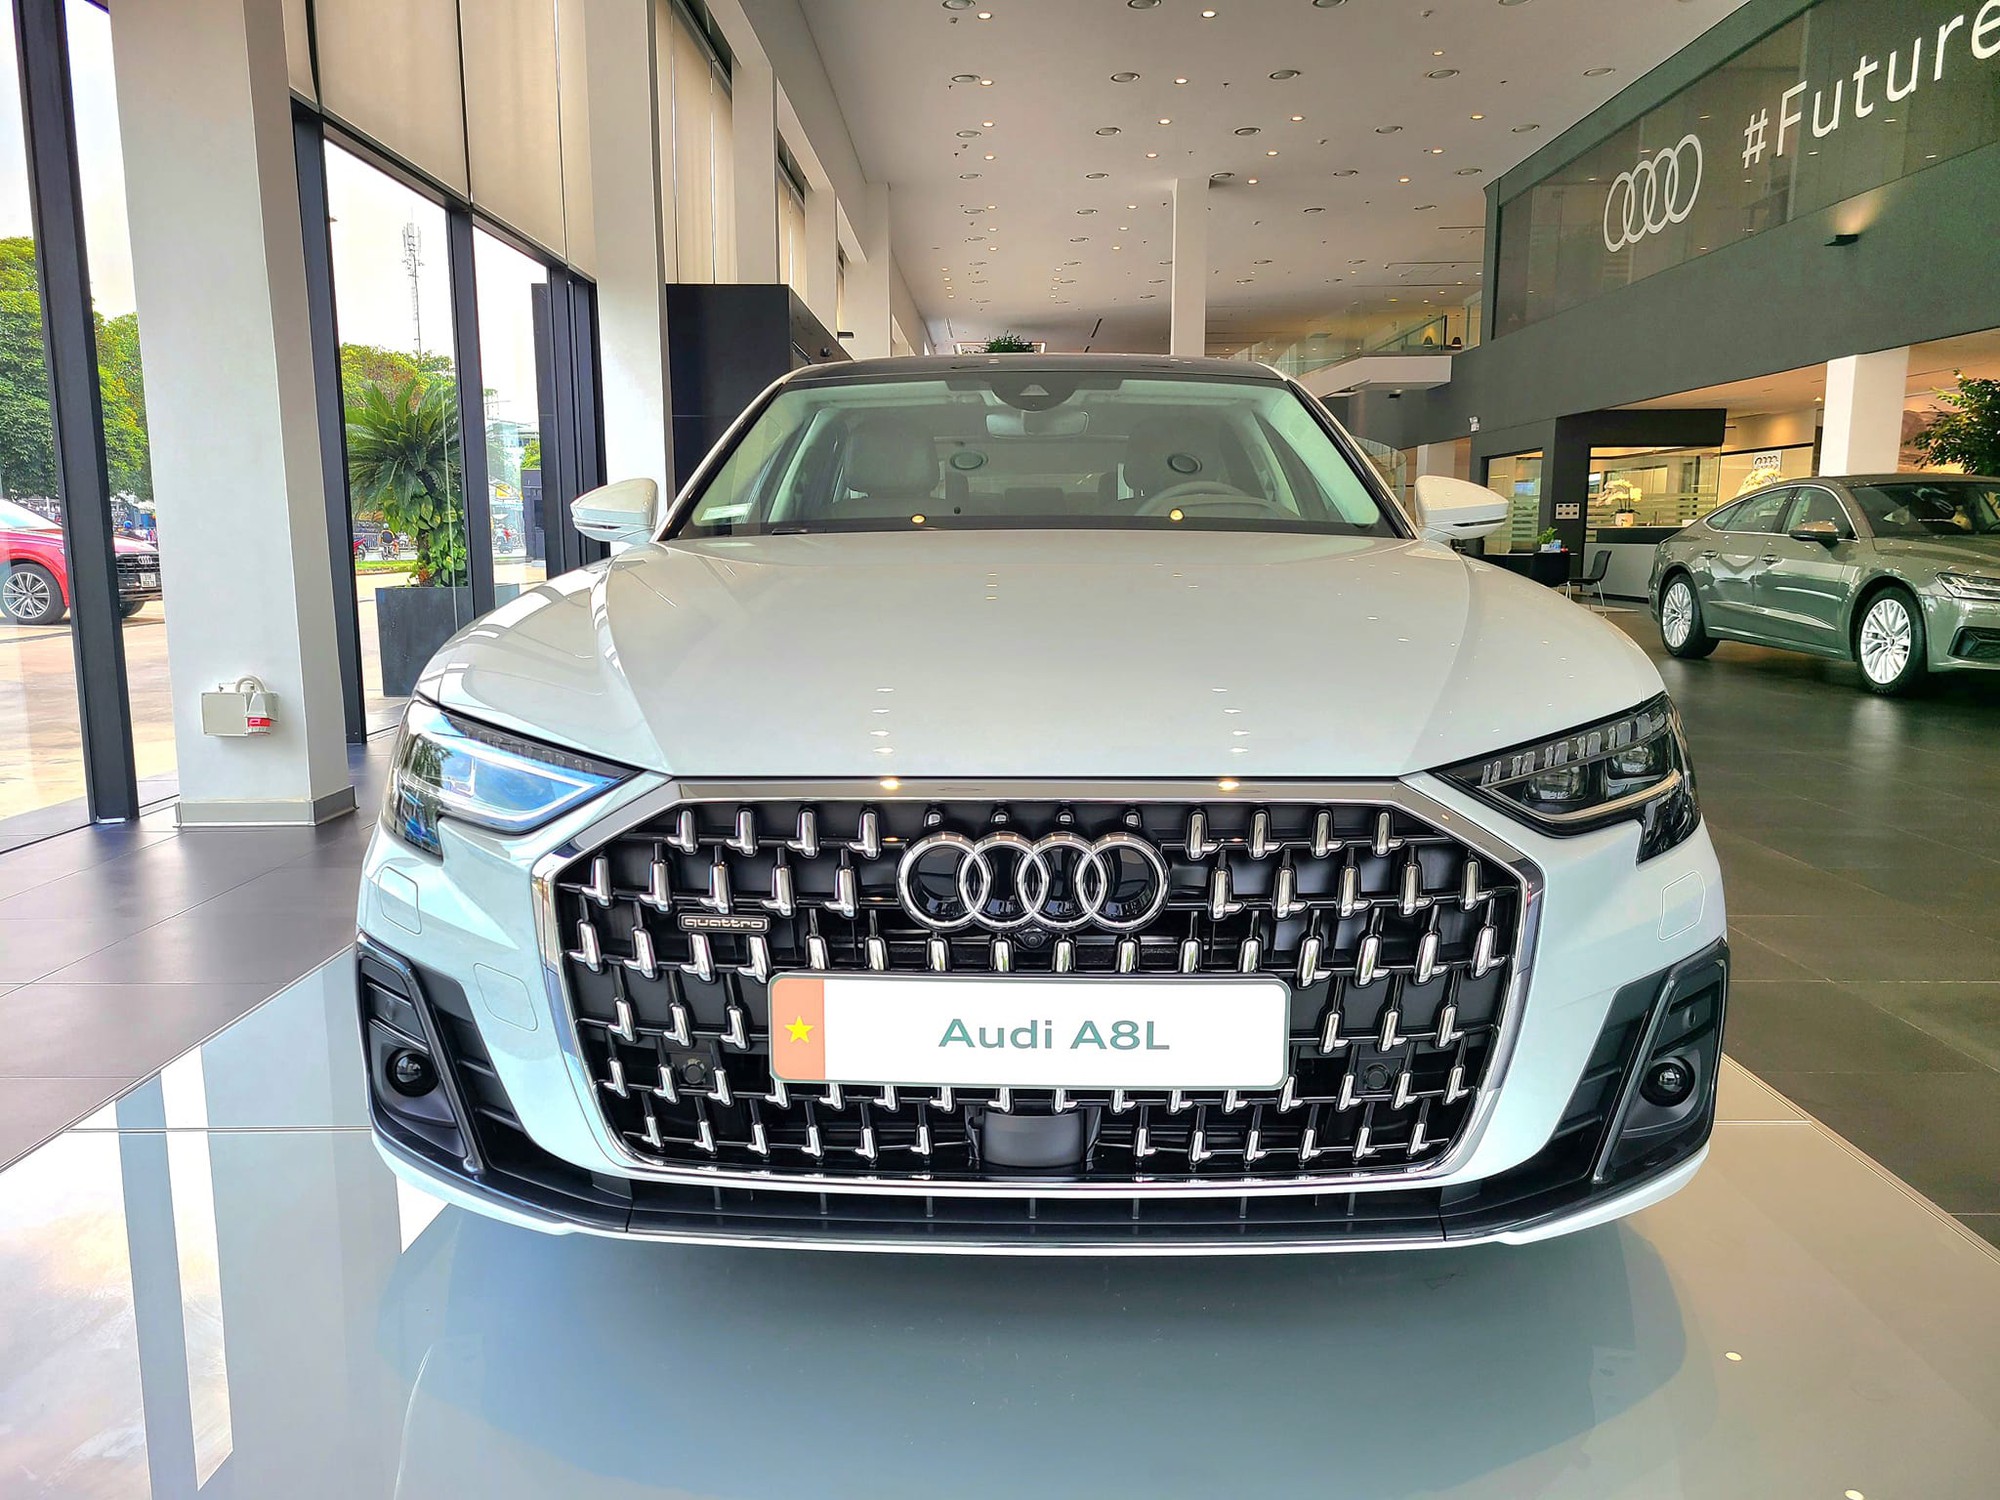 Audi A8L giảm giá chưa từng thấy tại đại lý: Khởi điểm 4,1 tỷ, sản xuất 2022, rẻ hơn hẳn 7-Series và S-Class- Ảnh 2.